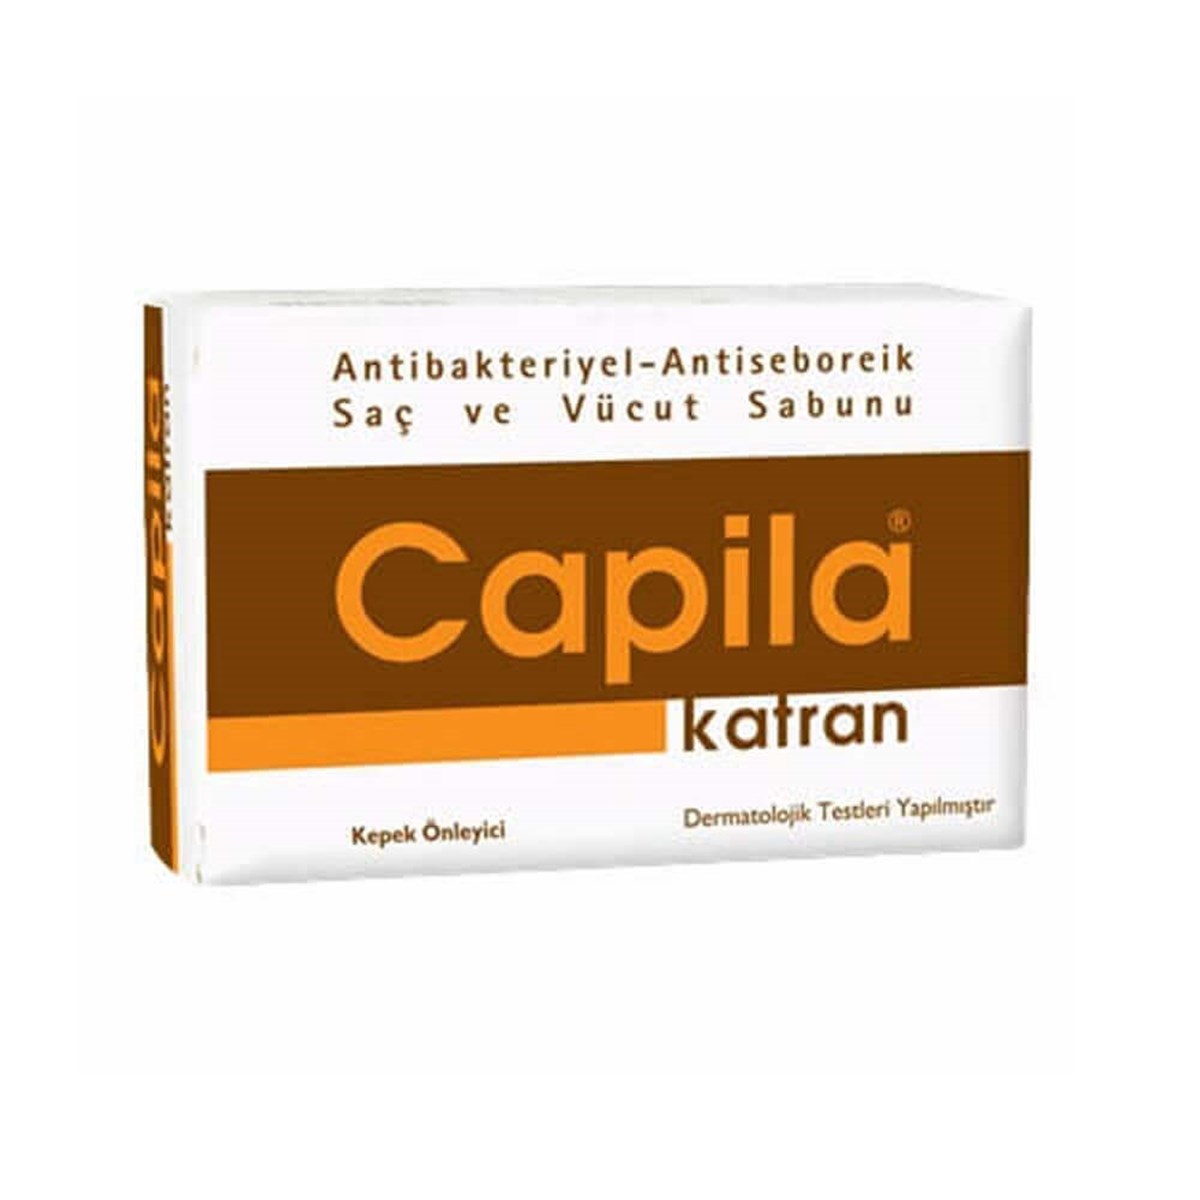 Capila Katran Kepek Önleyici Saç ve Vücut Sabunu 90 gr Fiyatları |  Dermosiparis.com